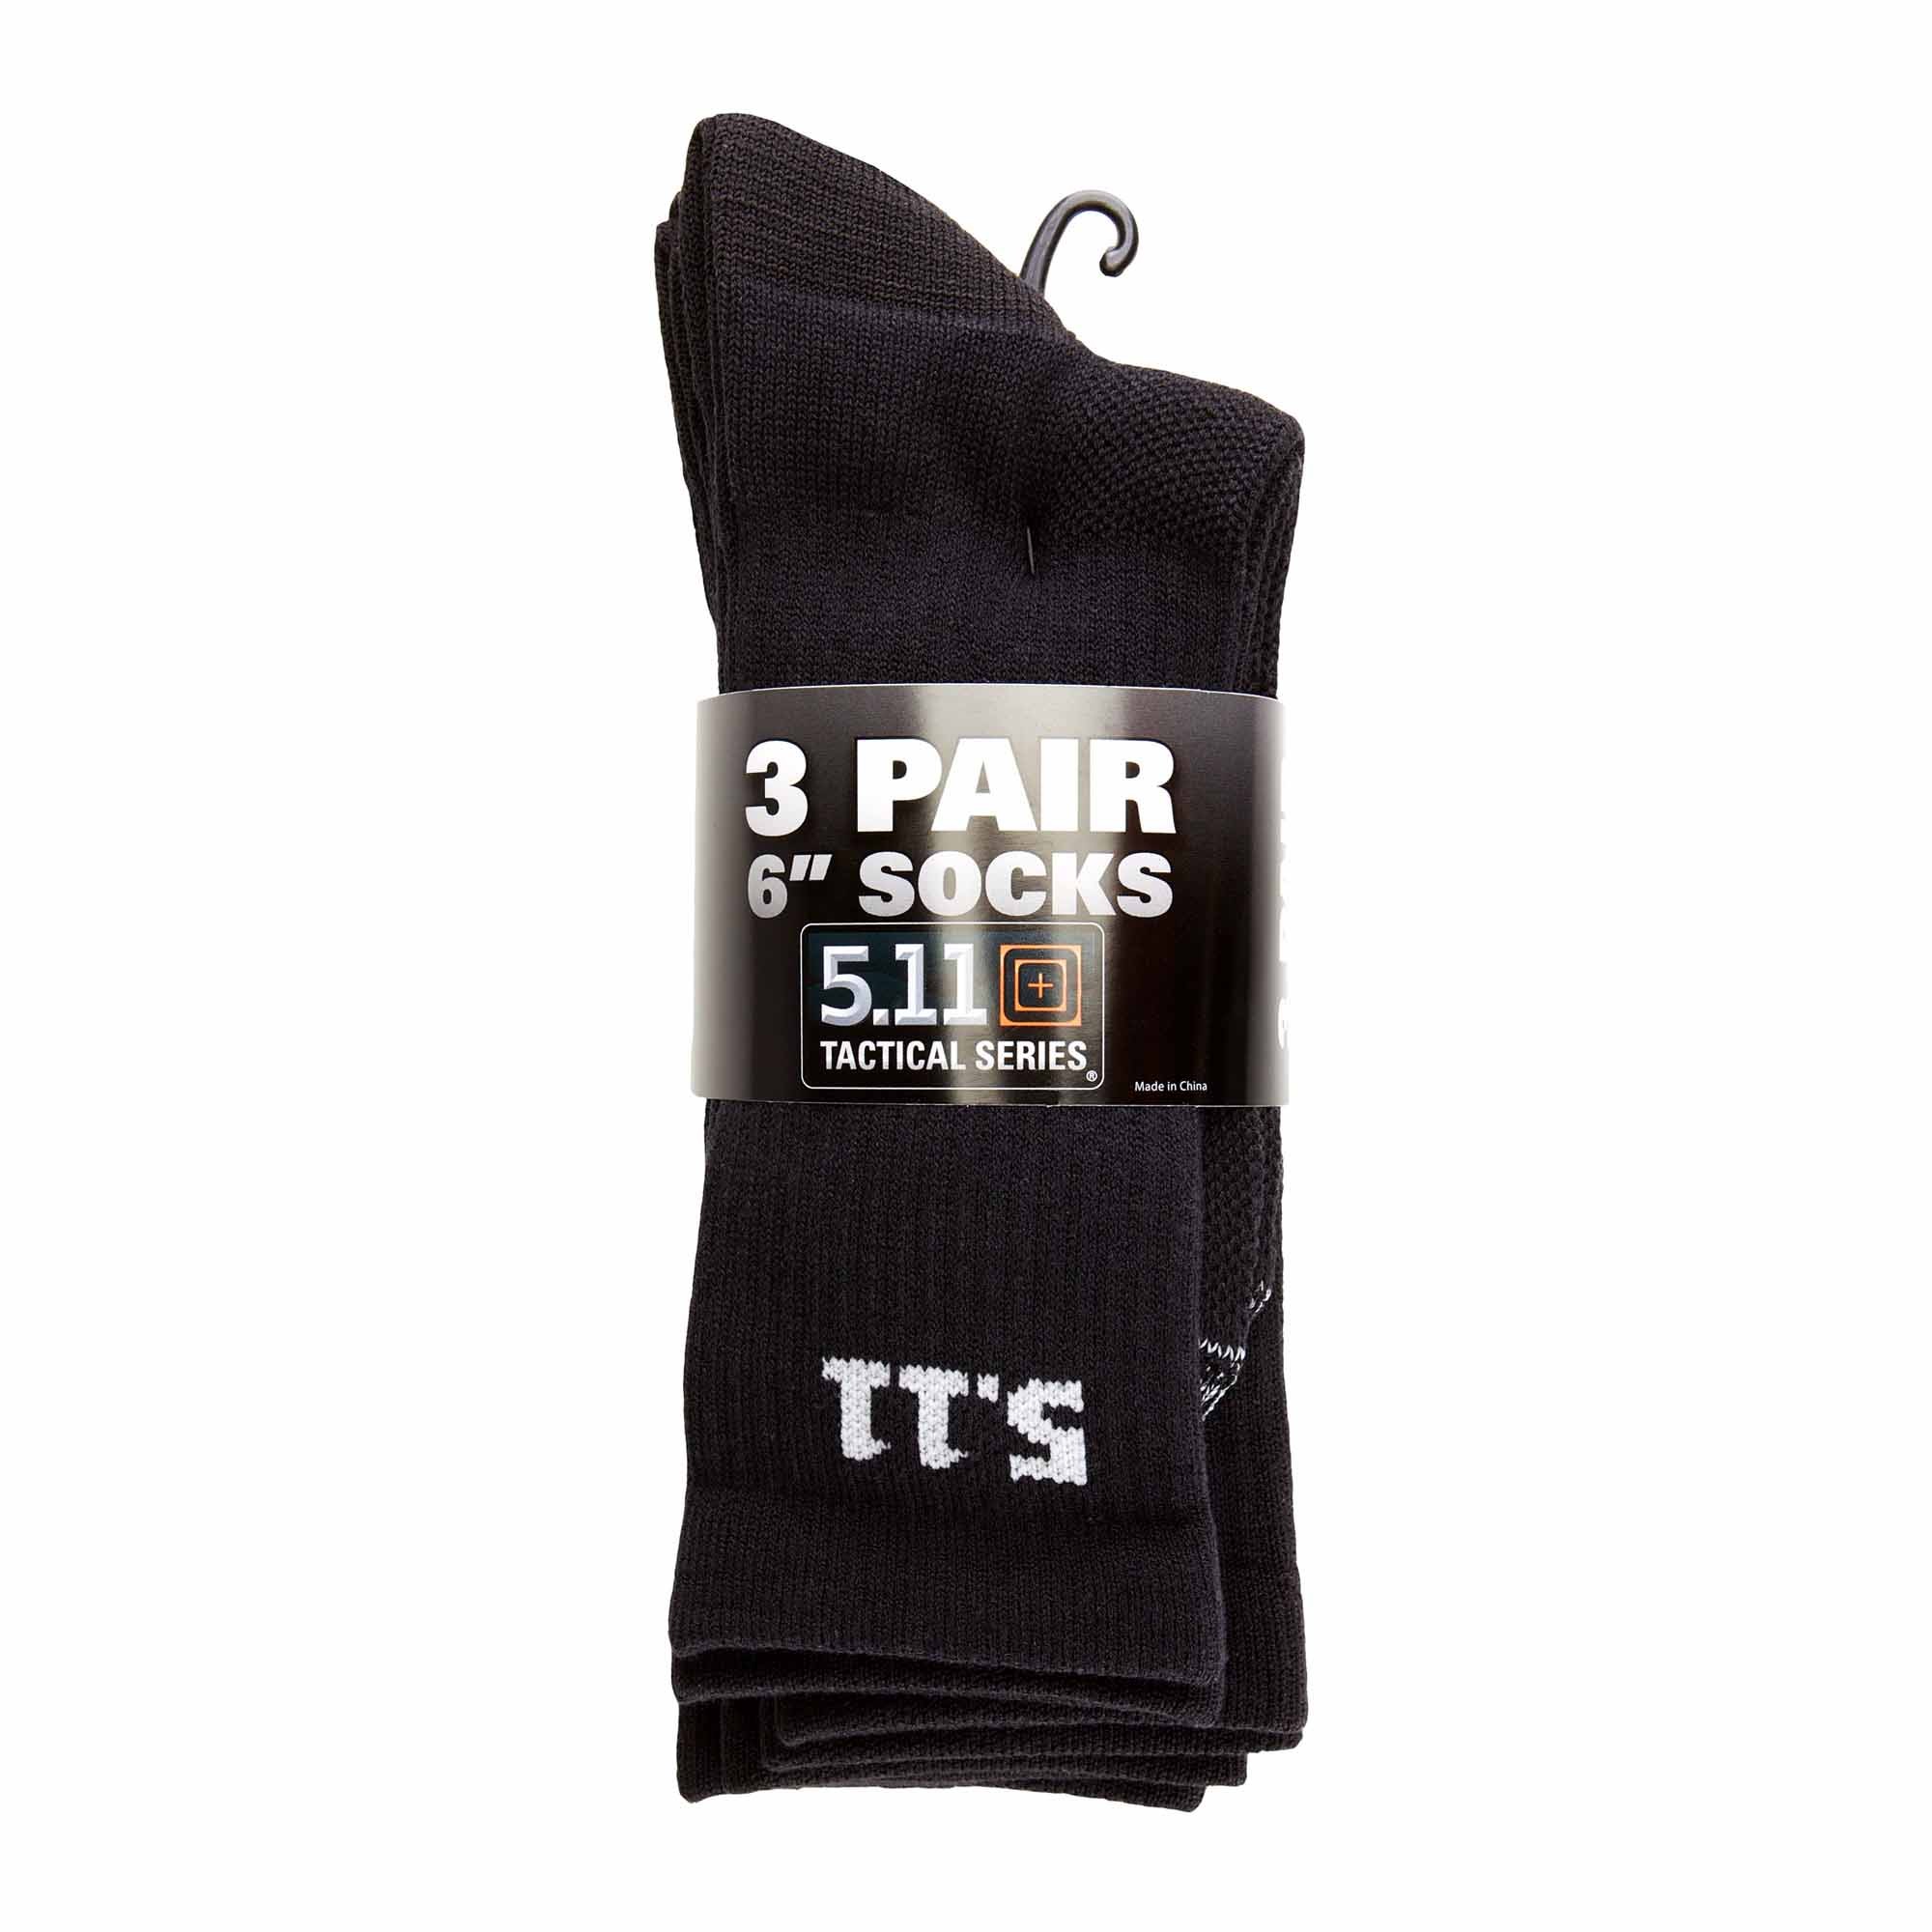 5.11 6″ Socks 3-Pack